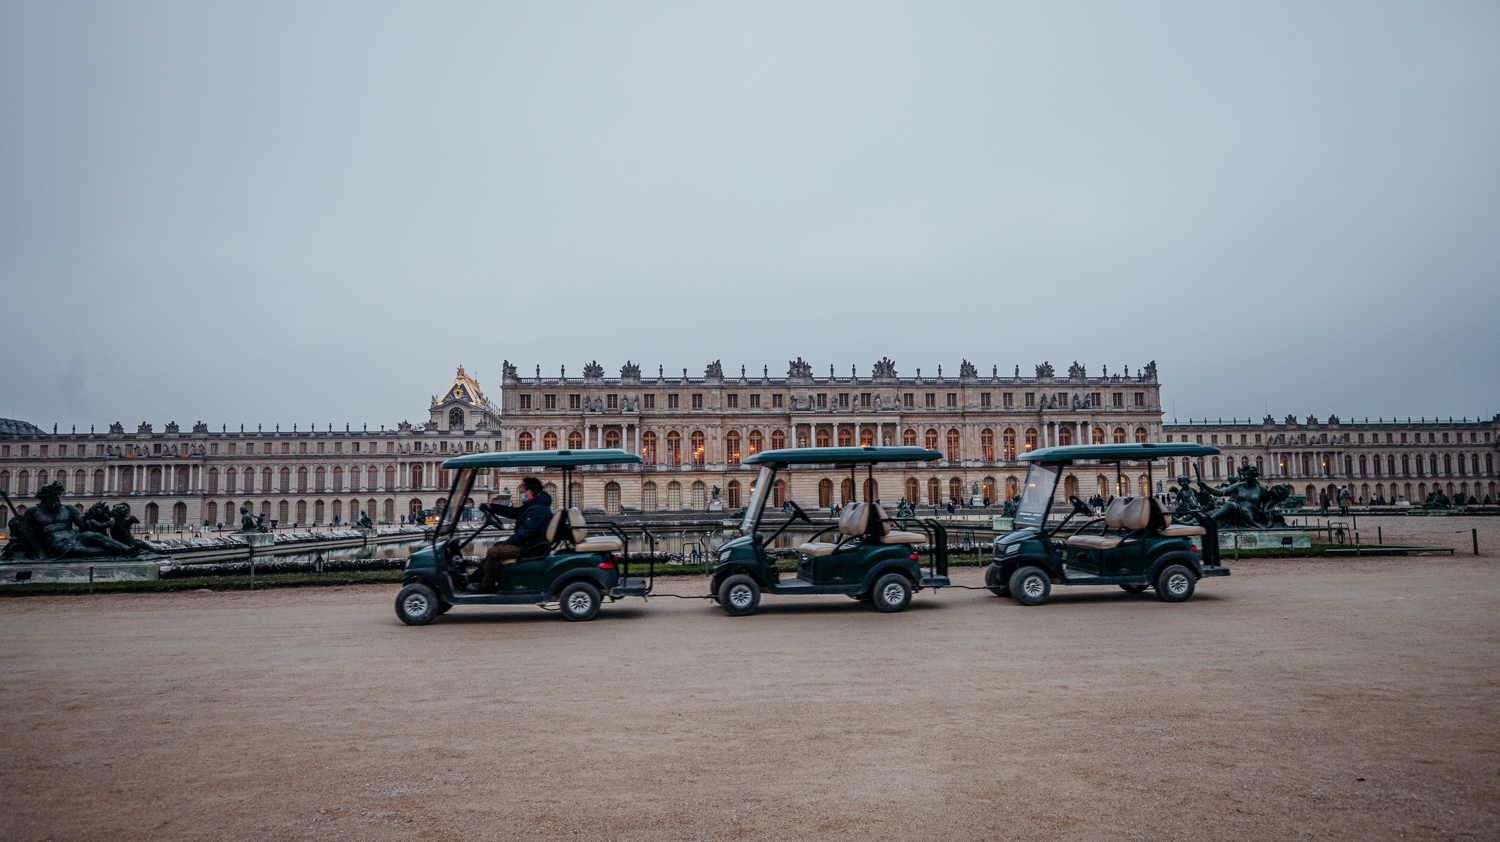 Des petites voitures permettent aux visiteurs de se promener partout dans les jardins © Globe Reporters